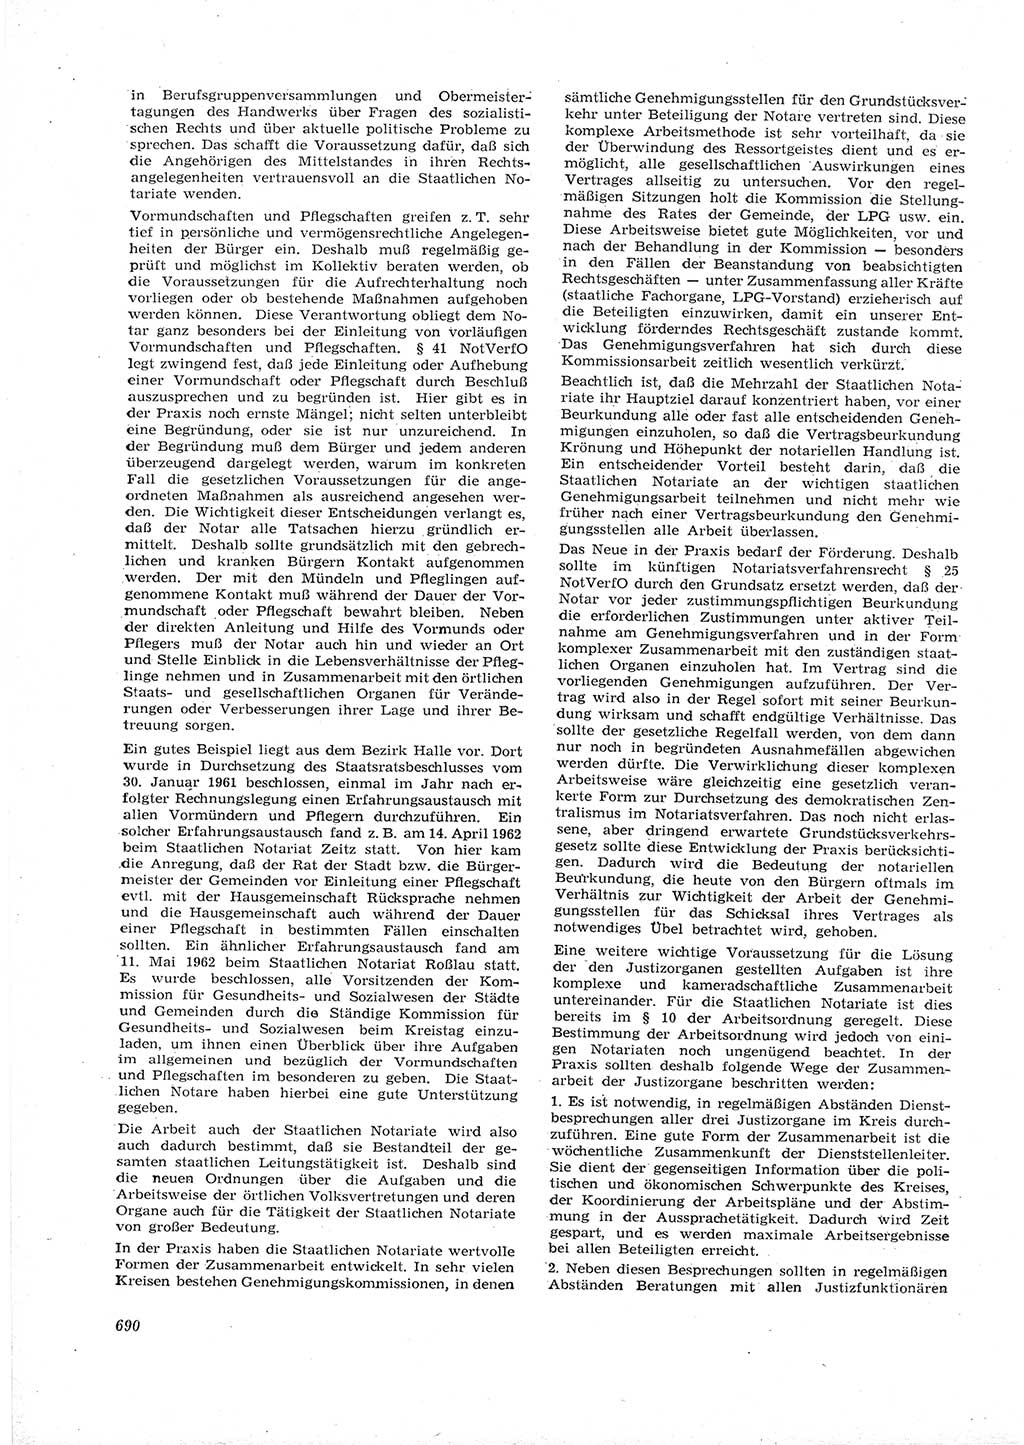 Neue Justiz (NJ), Zeitschrift für Recht und Rechtswissenschaft [Deutsche Demokratische Republik (DDR)], 16. Jahrgang 1962, Seite 690 (NJ DDR 1962, S. 690)